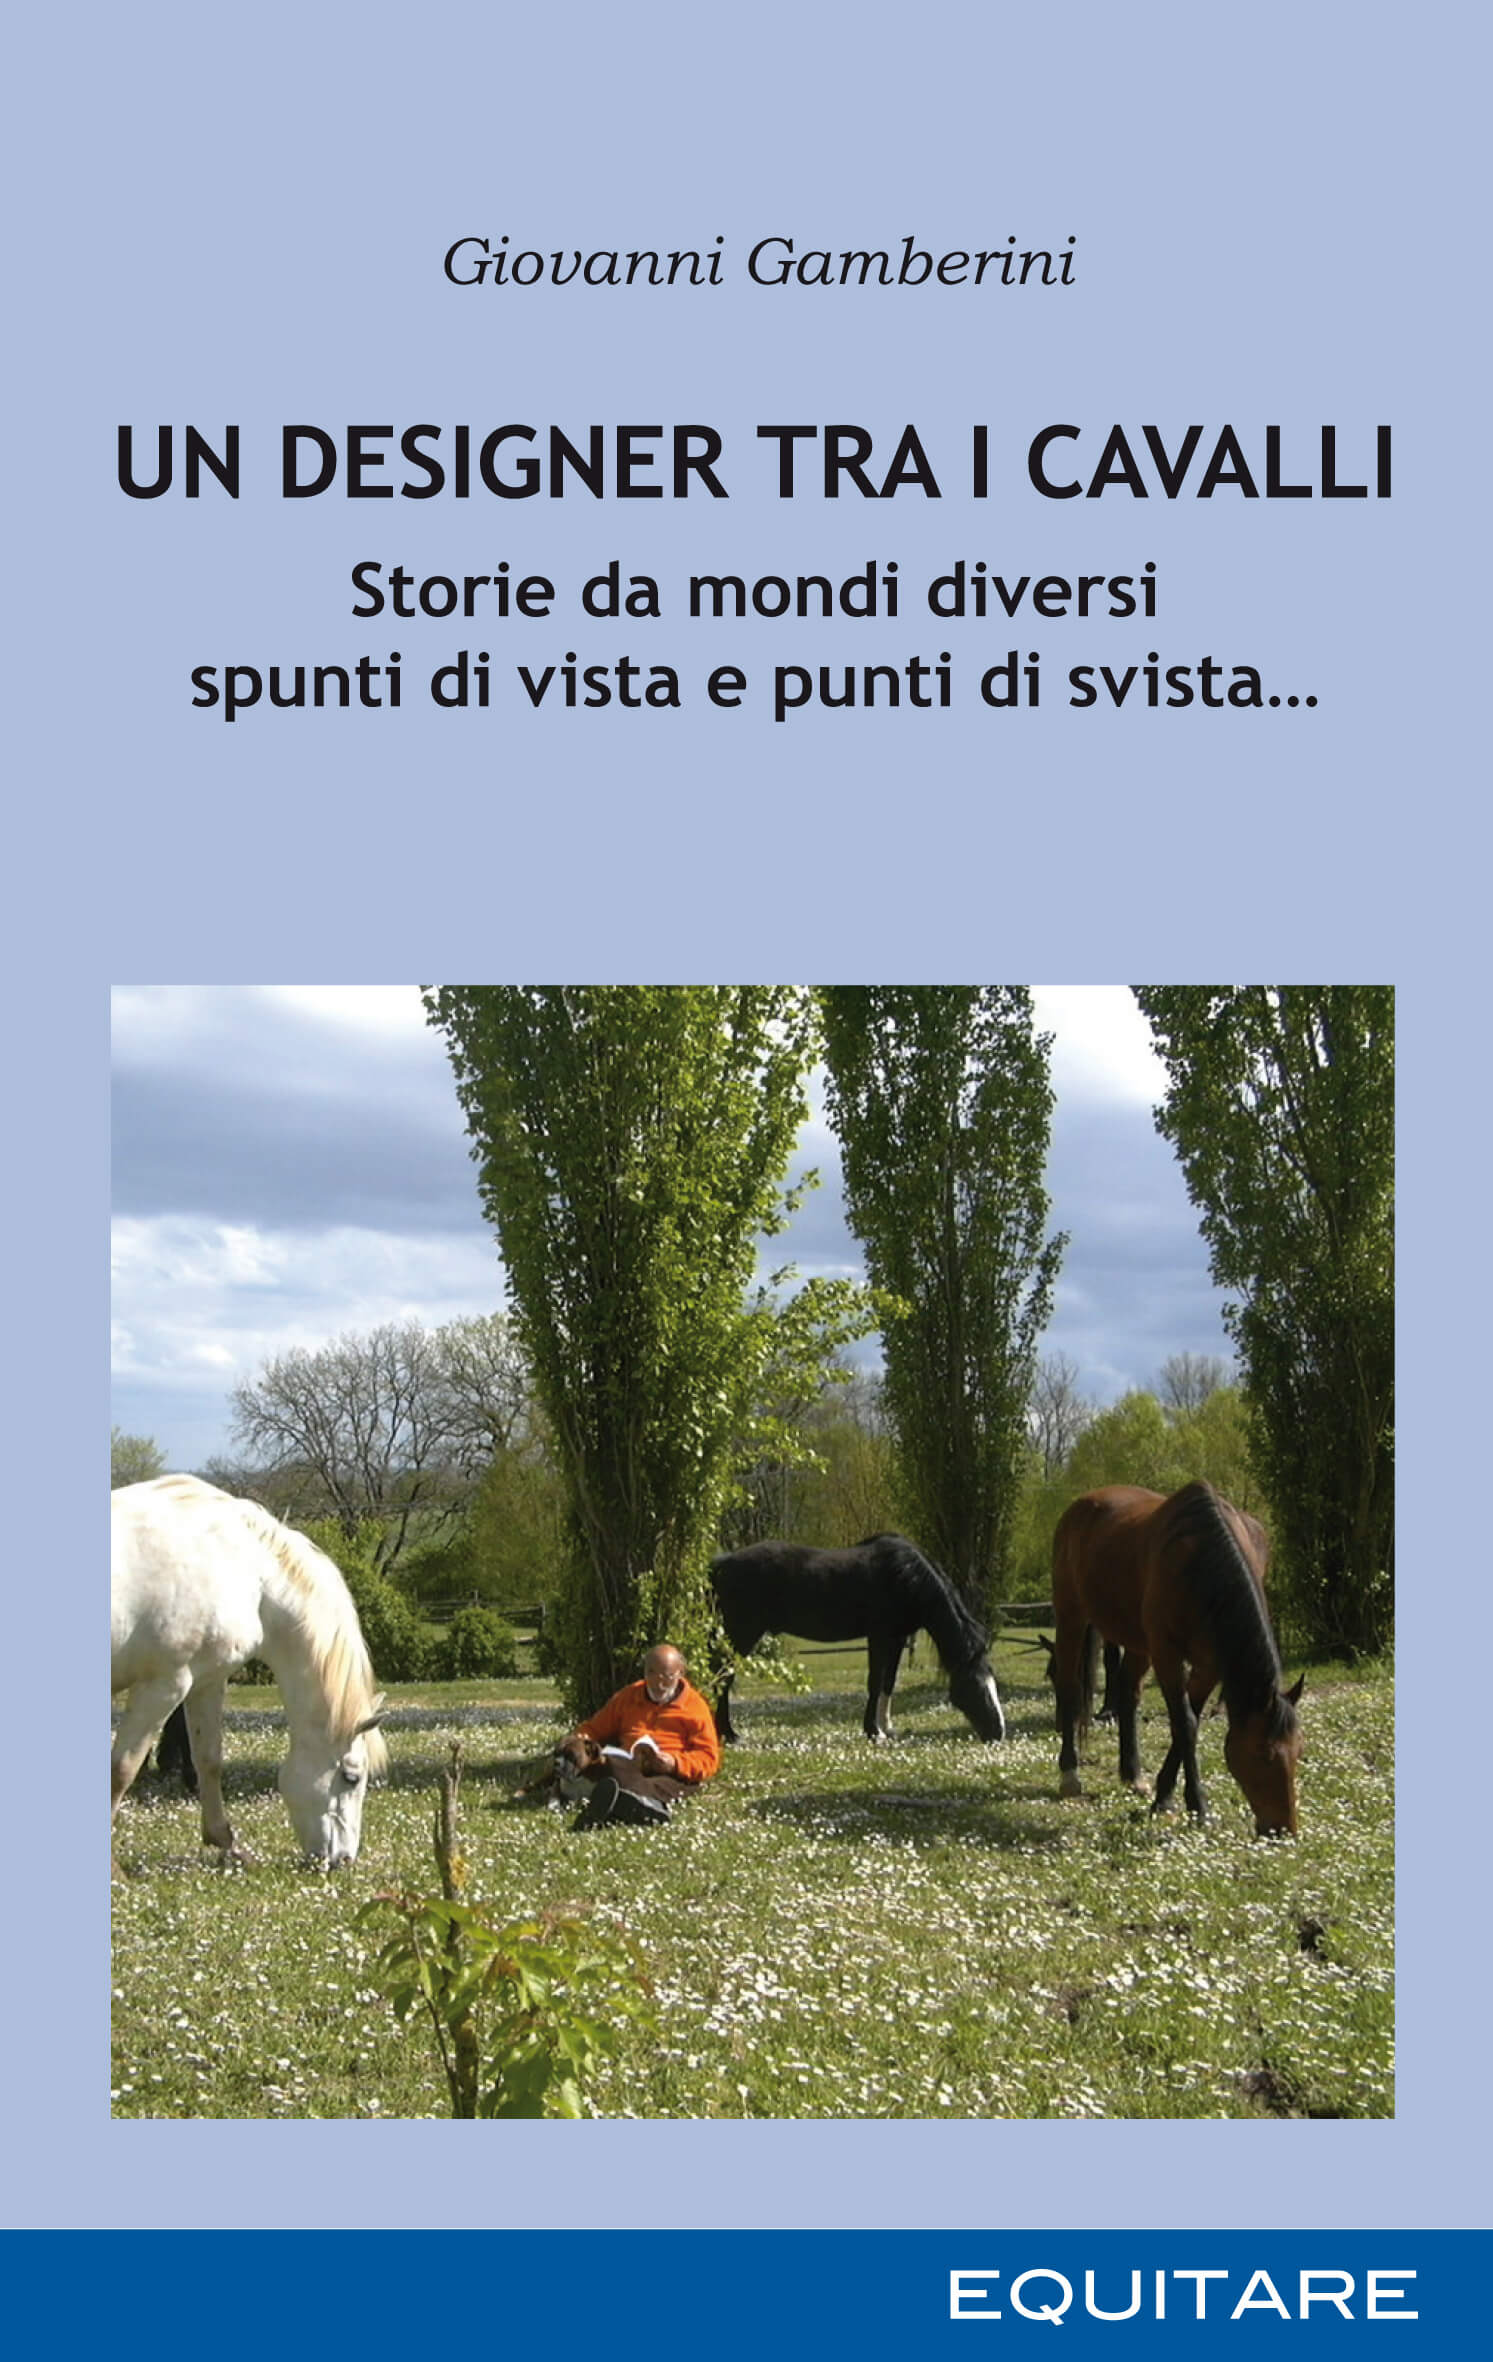 UN DESIGNER TRA I CAVALLI - Giovanni Gamberini